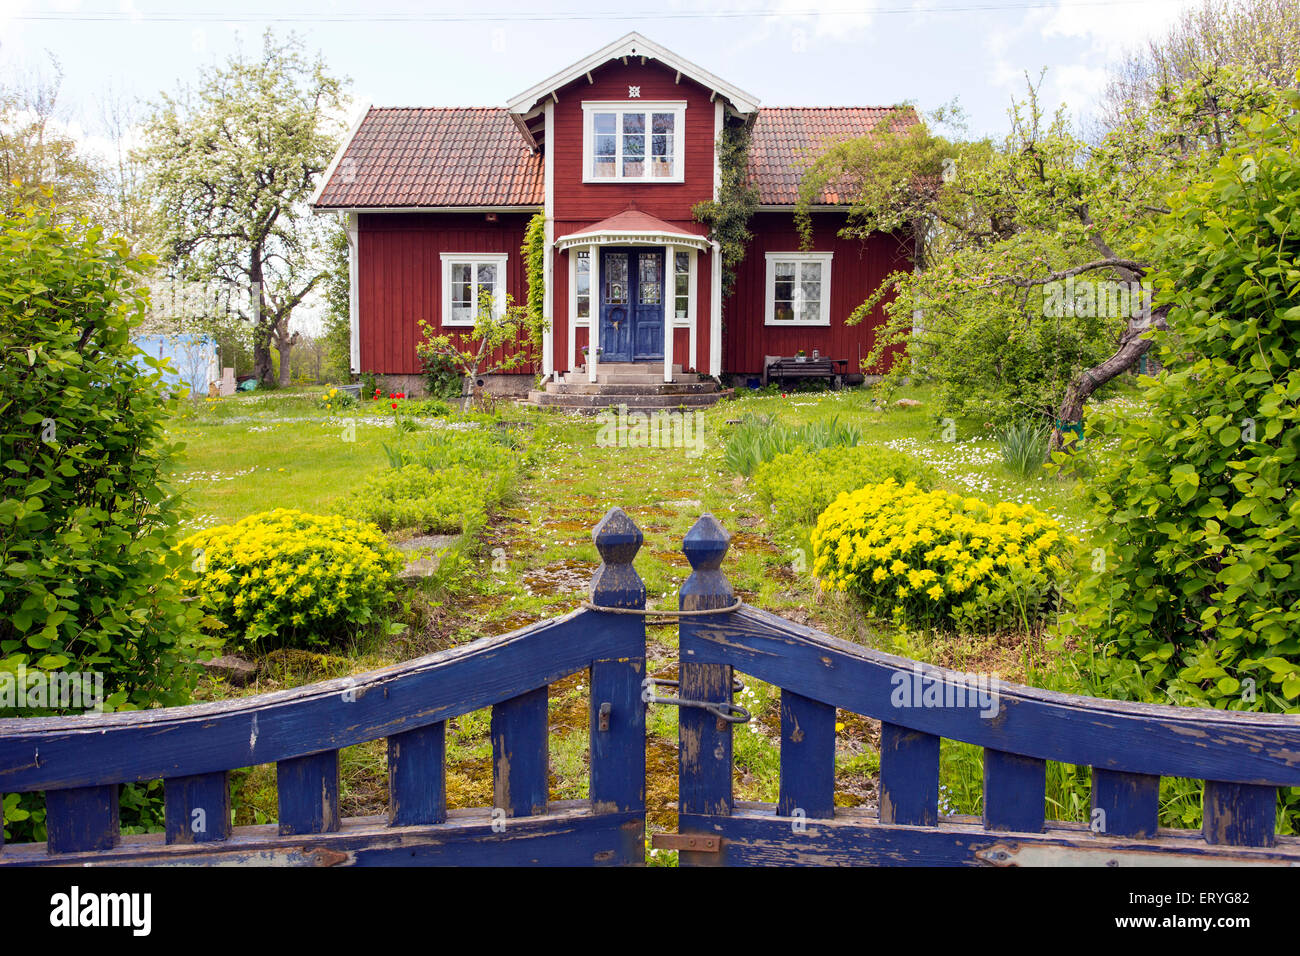 House on Lake Vänern, Mariestad, Sweden Stock Photo